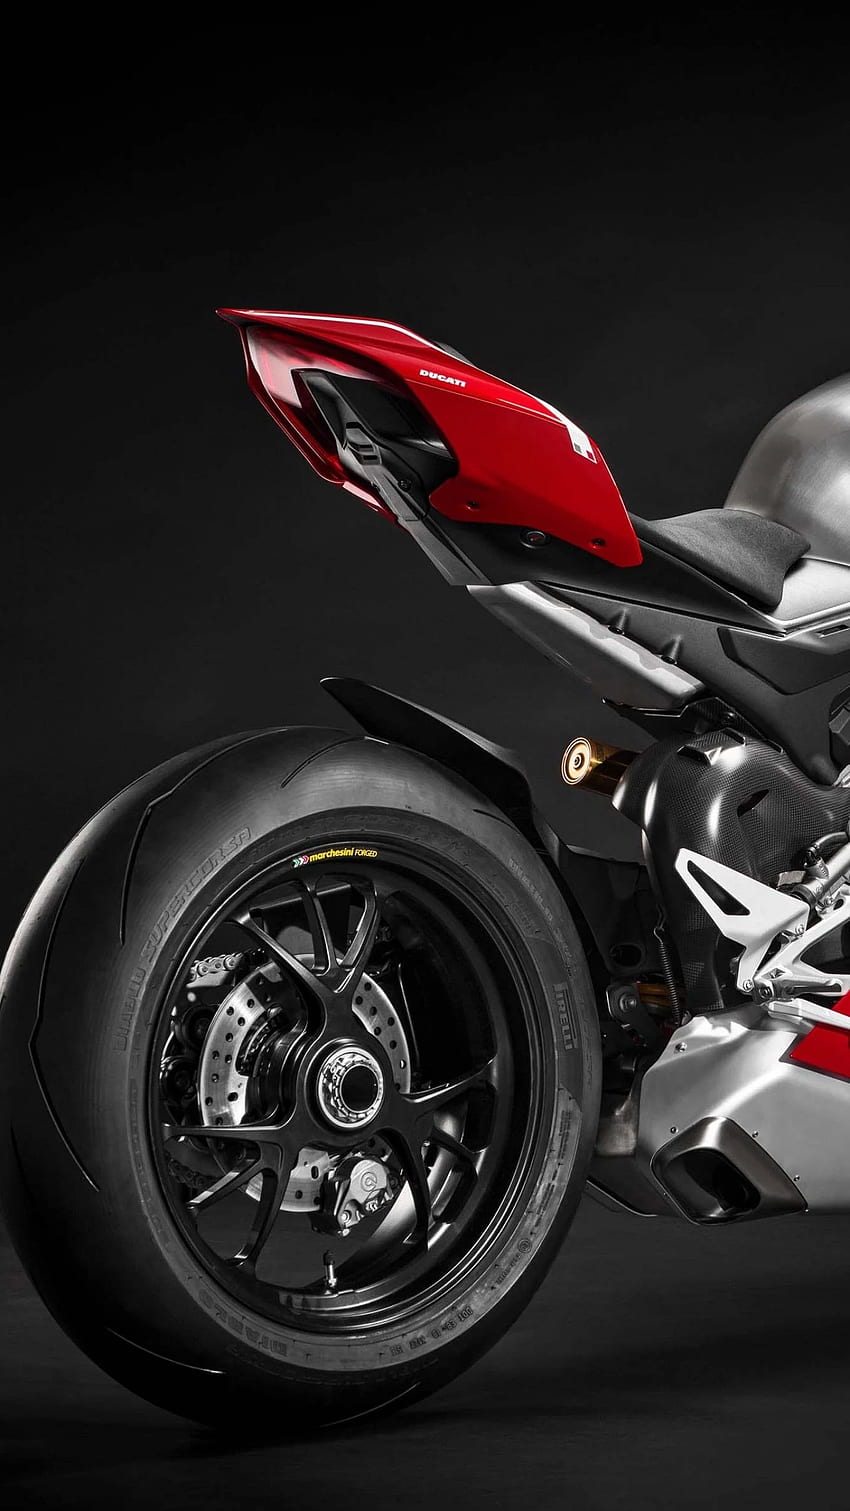 100+] Ducati Wallpapers | Wallpapers.com